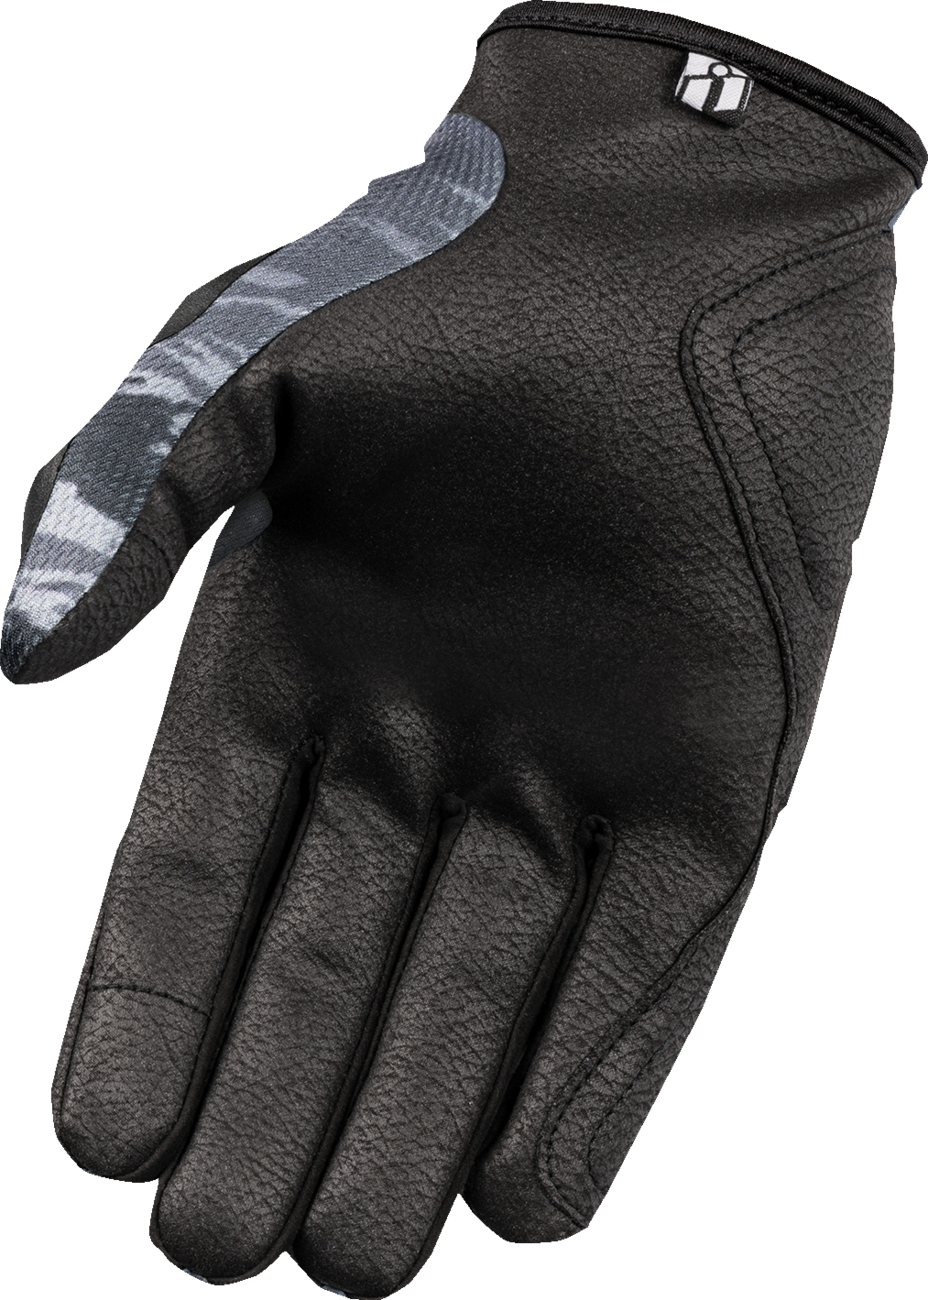 ICON Hooligan™ Tiger's Blood Gloves - Gray - Medium 3301-4630